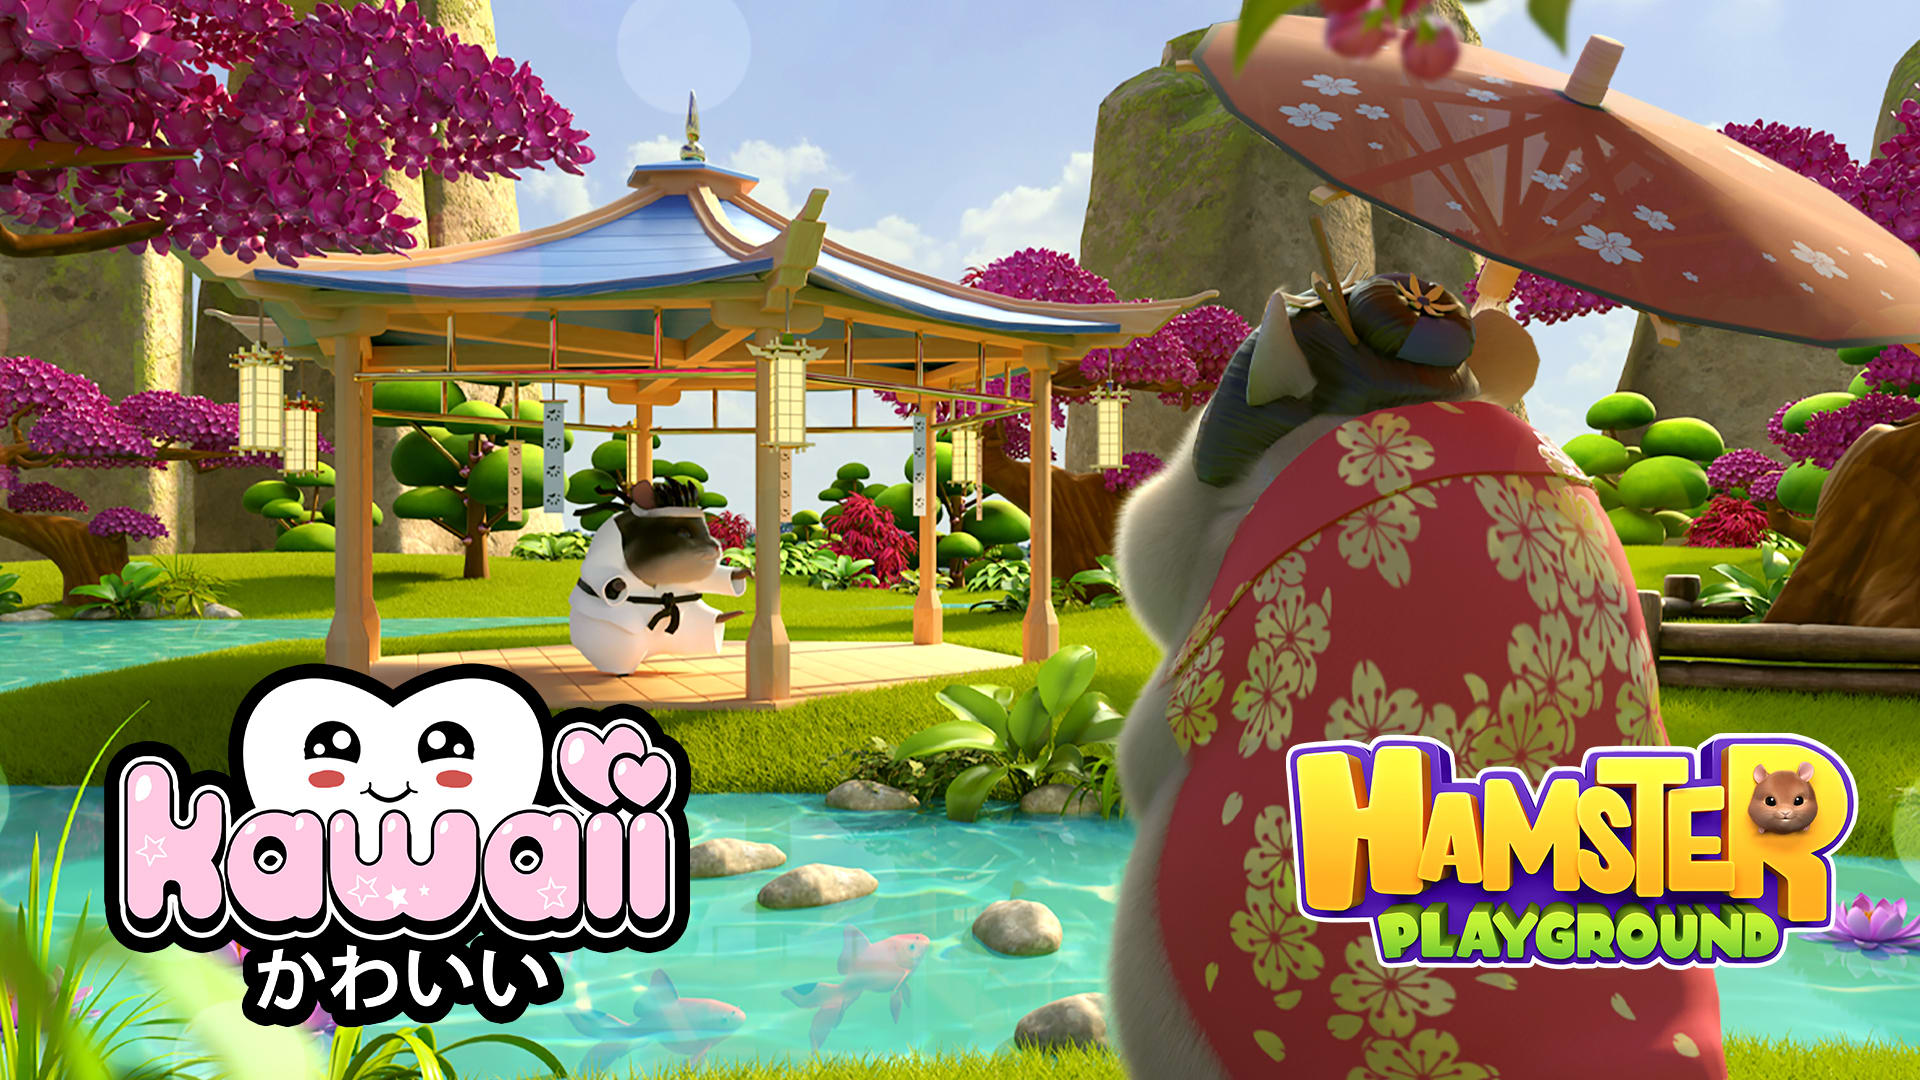 Hamster Playground - Kawaii DLC